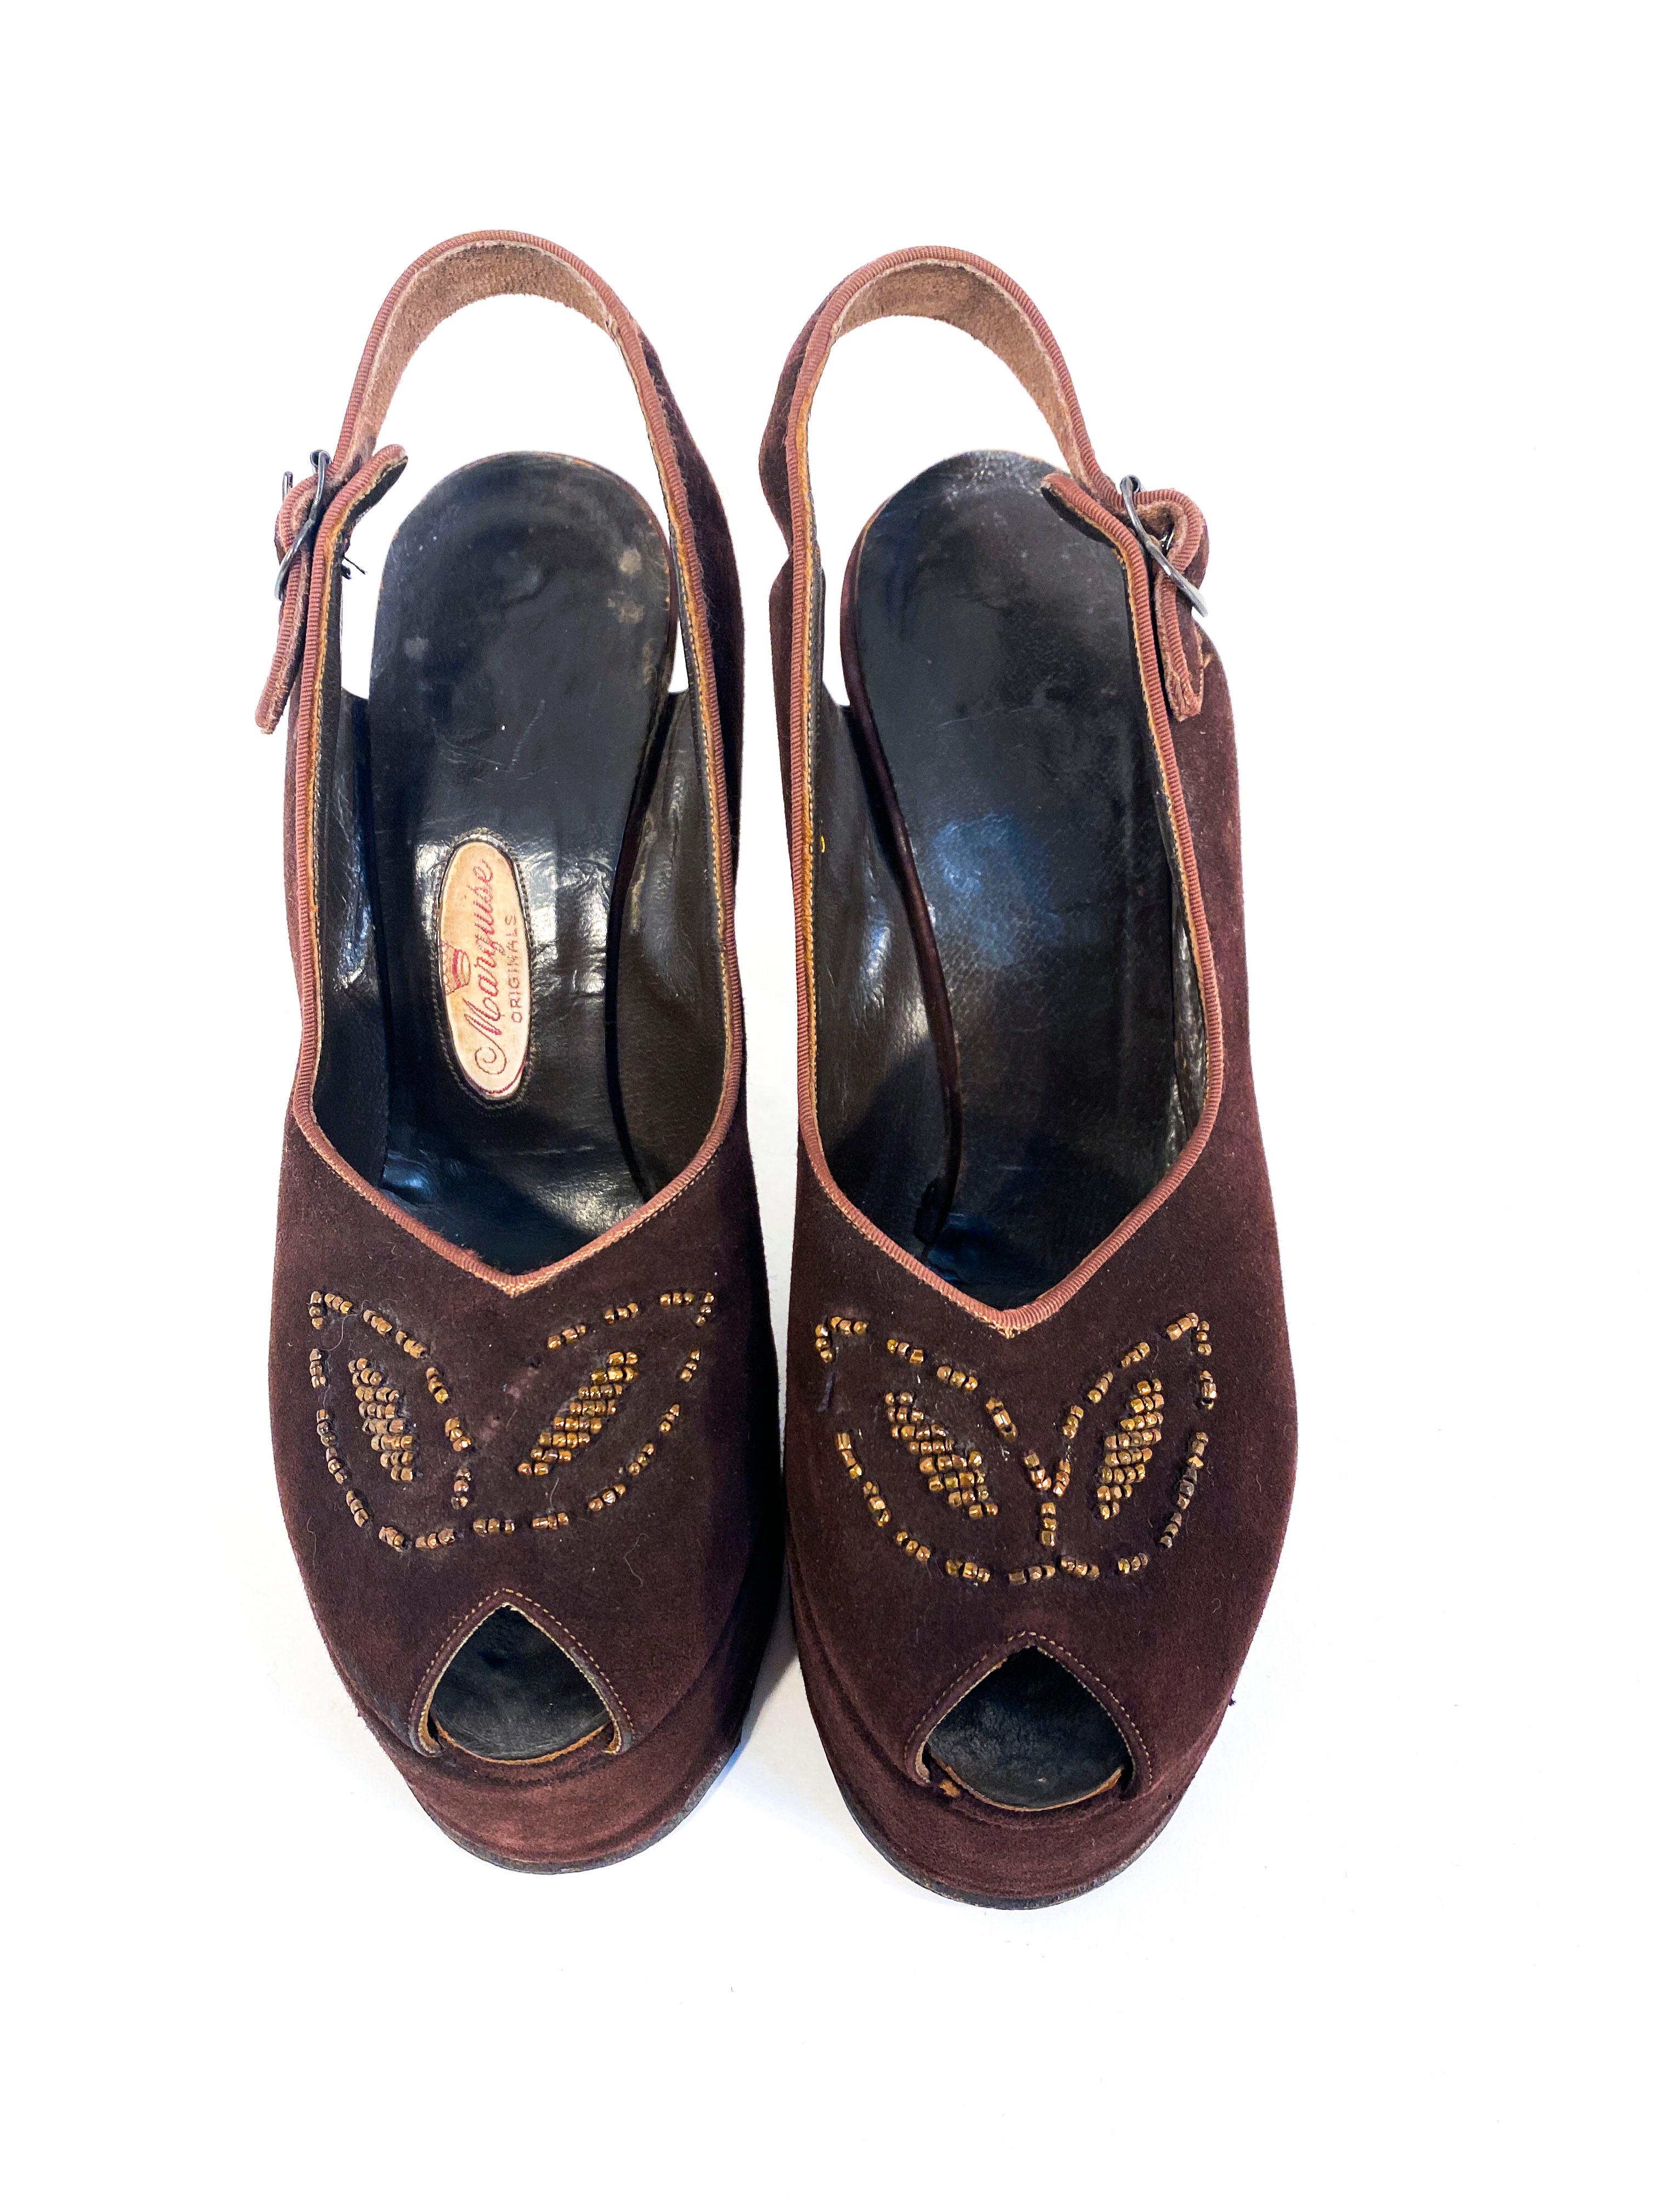 1940s heels